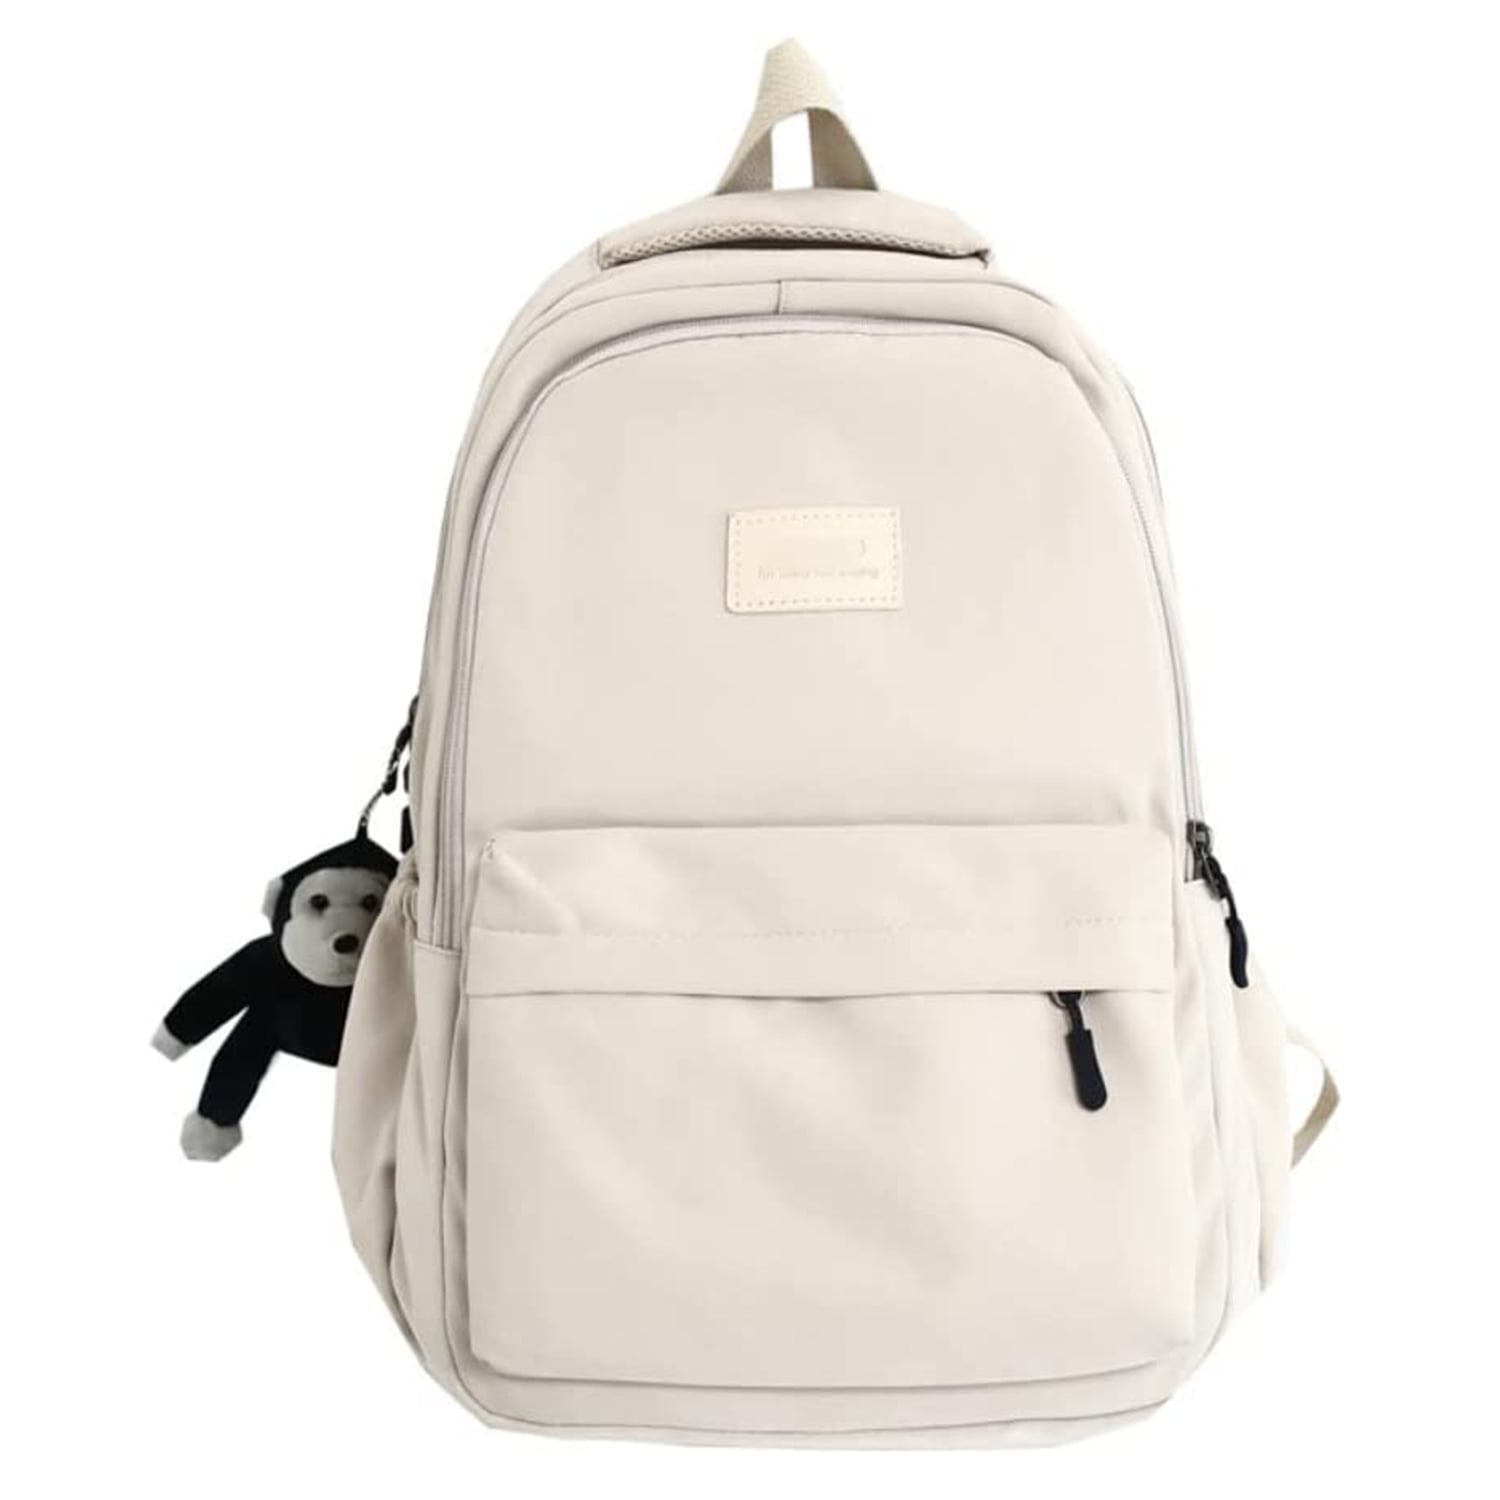 Aesthetic Backpack Cute Student Backpack School Supplies,Beige ...